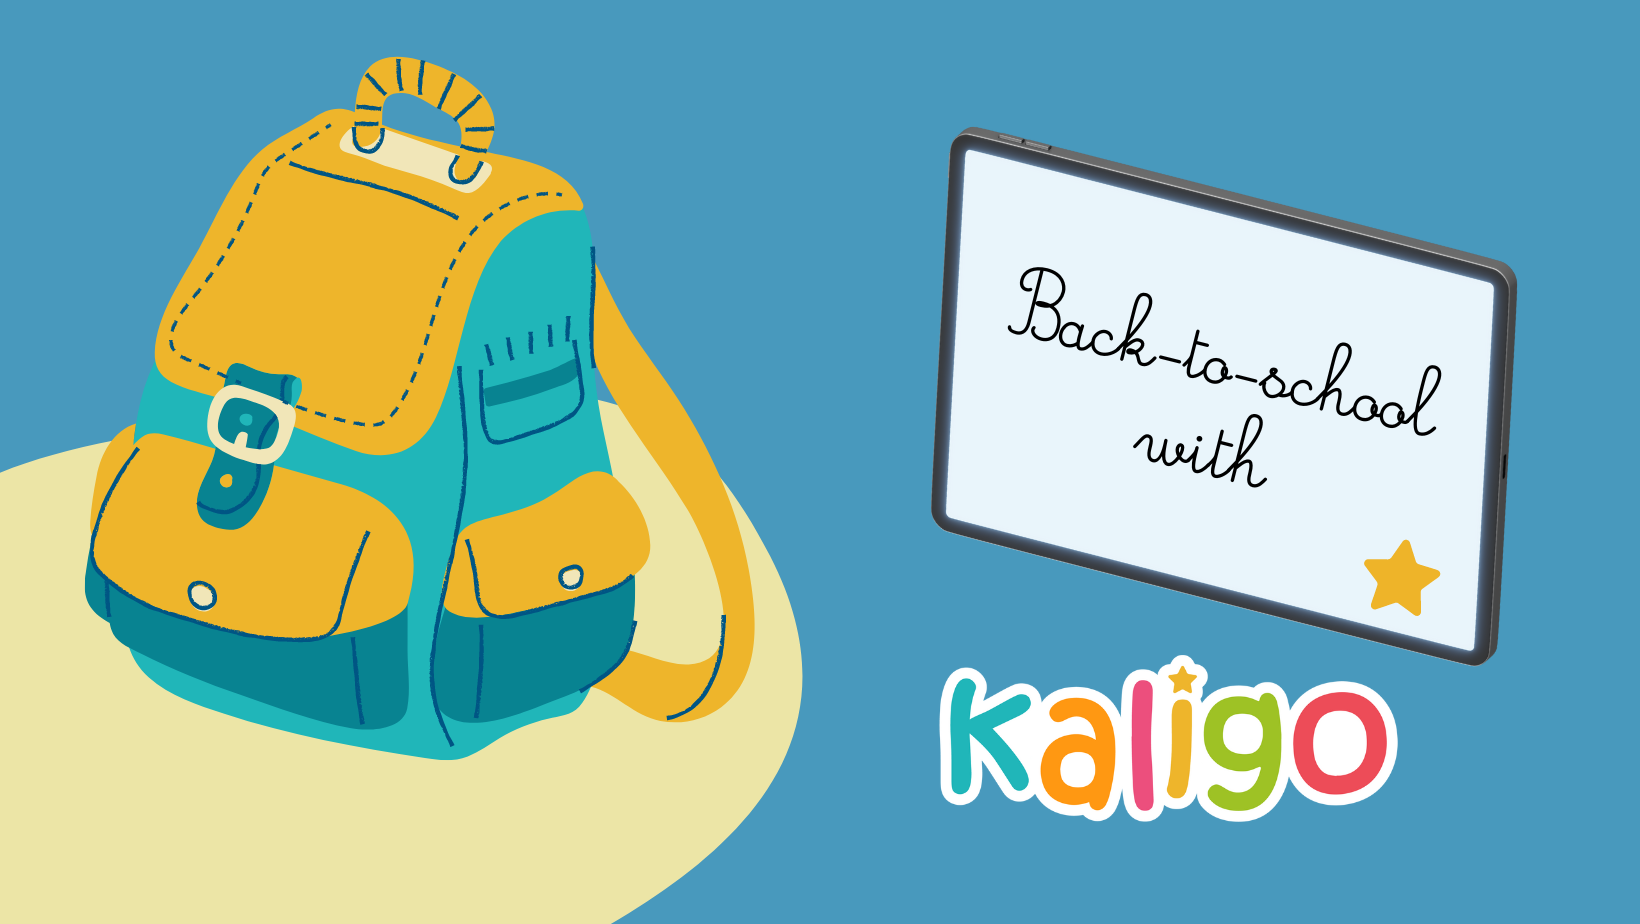 Back to school with Kaligo